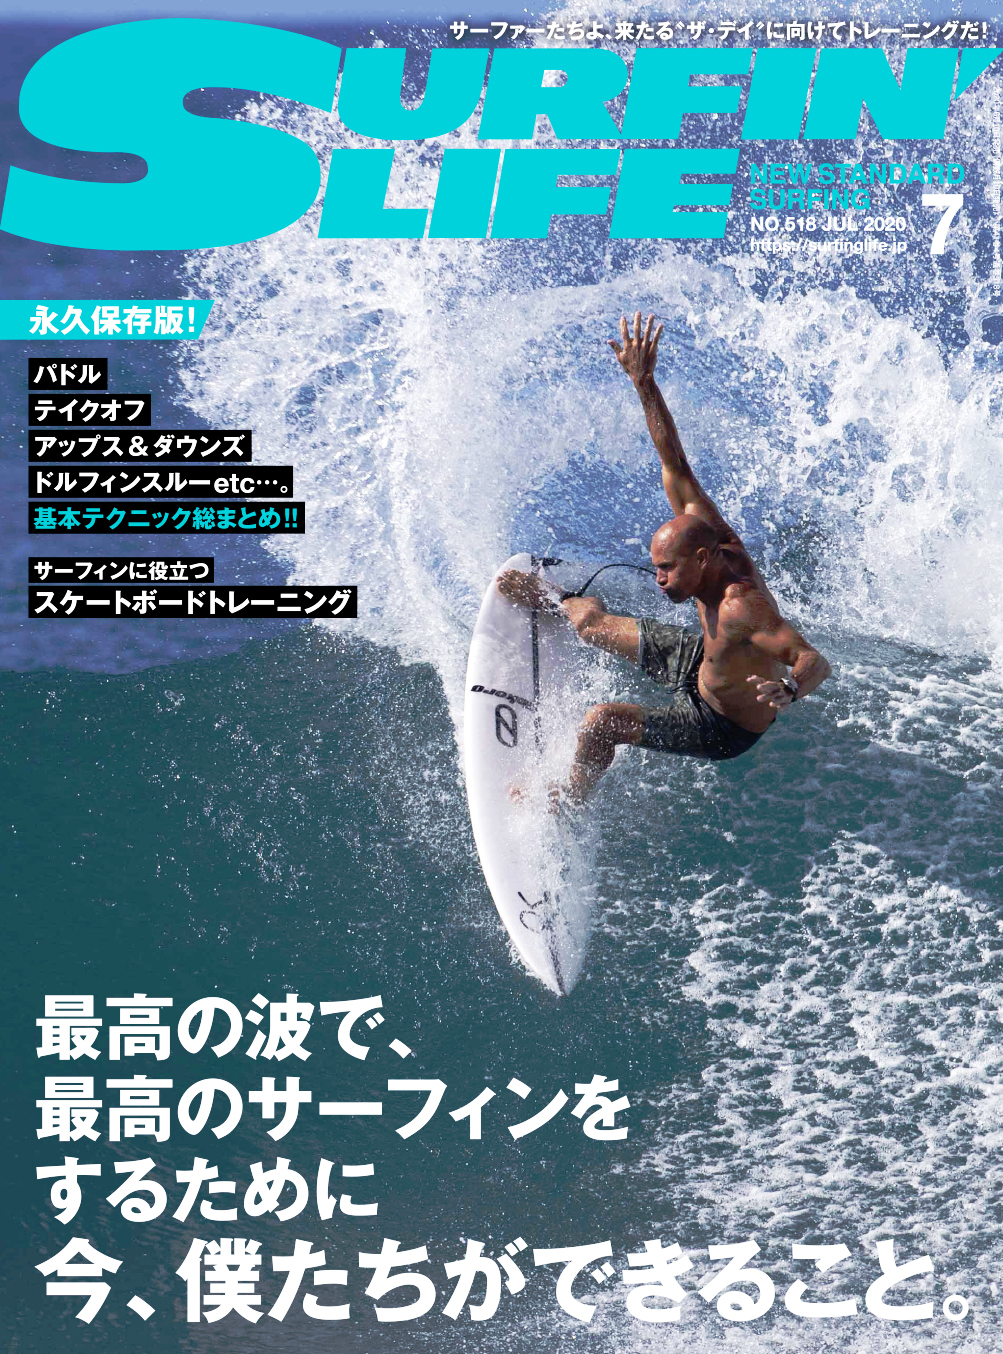 6月10日発売 Surfin Life 7月号 永久保存版 テクニ サーフィンニュース m The Surf News